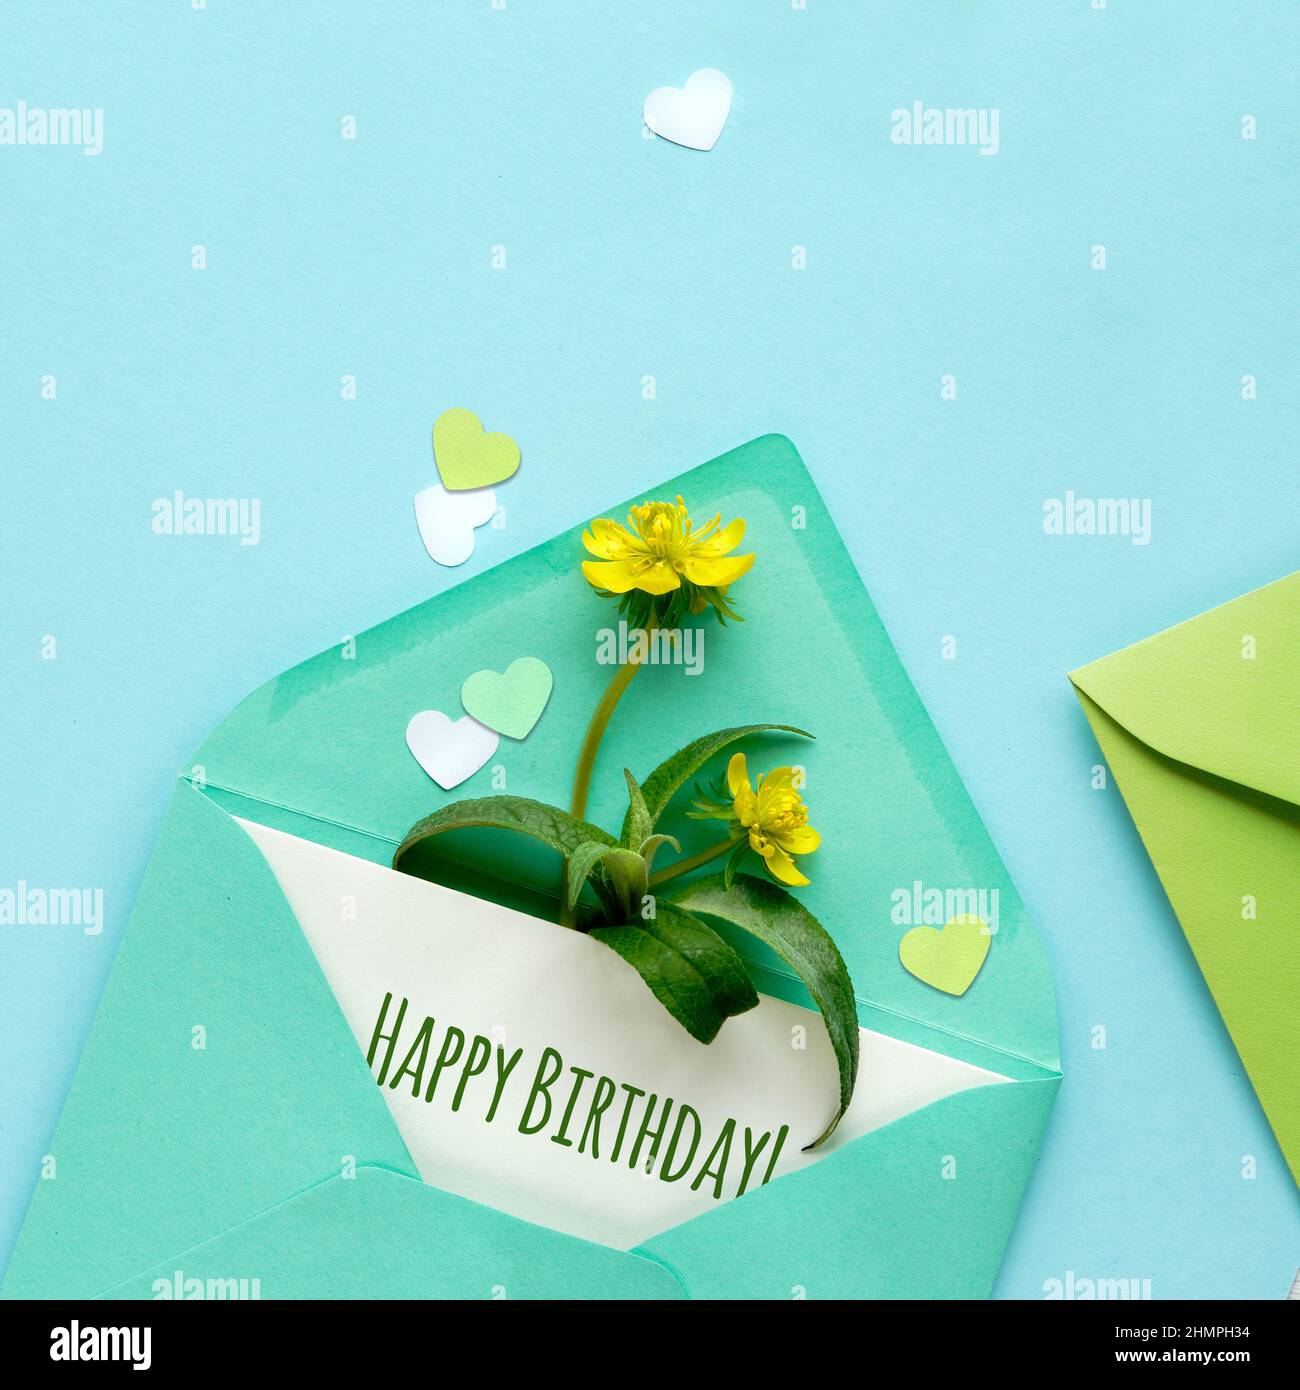 Buono Happy Birthday. Sfondo primaverile in tonalità di verde. Busta di carta con carta e fiori di erranthita giallo, cuori su carta verde menta. Foto Stock